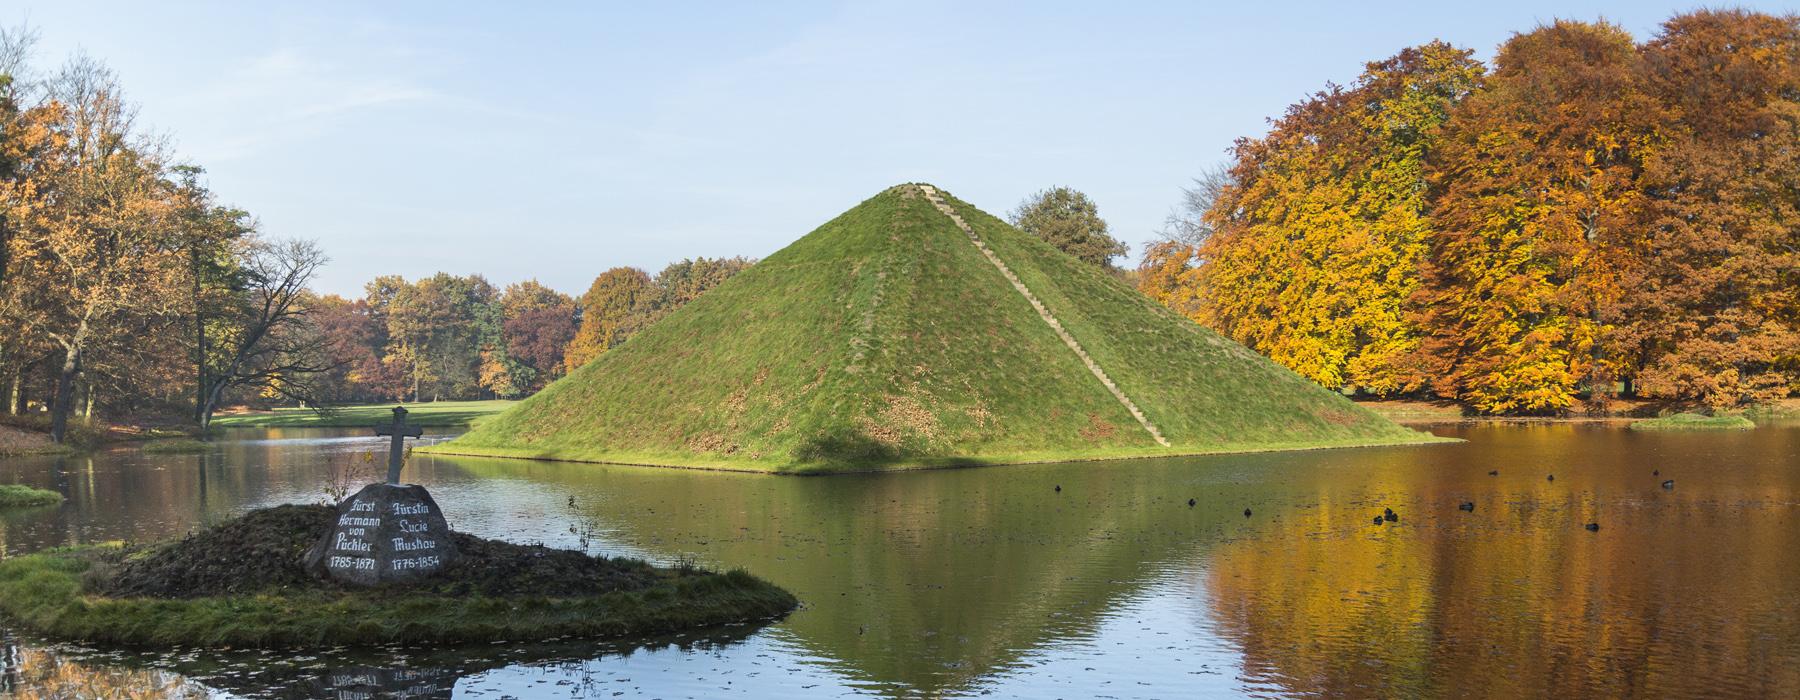 Seepyramide im Pückler-Park Branitz in Cottbus